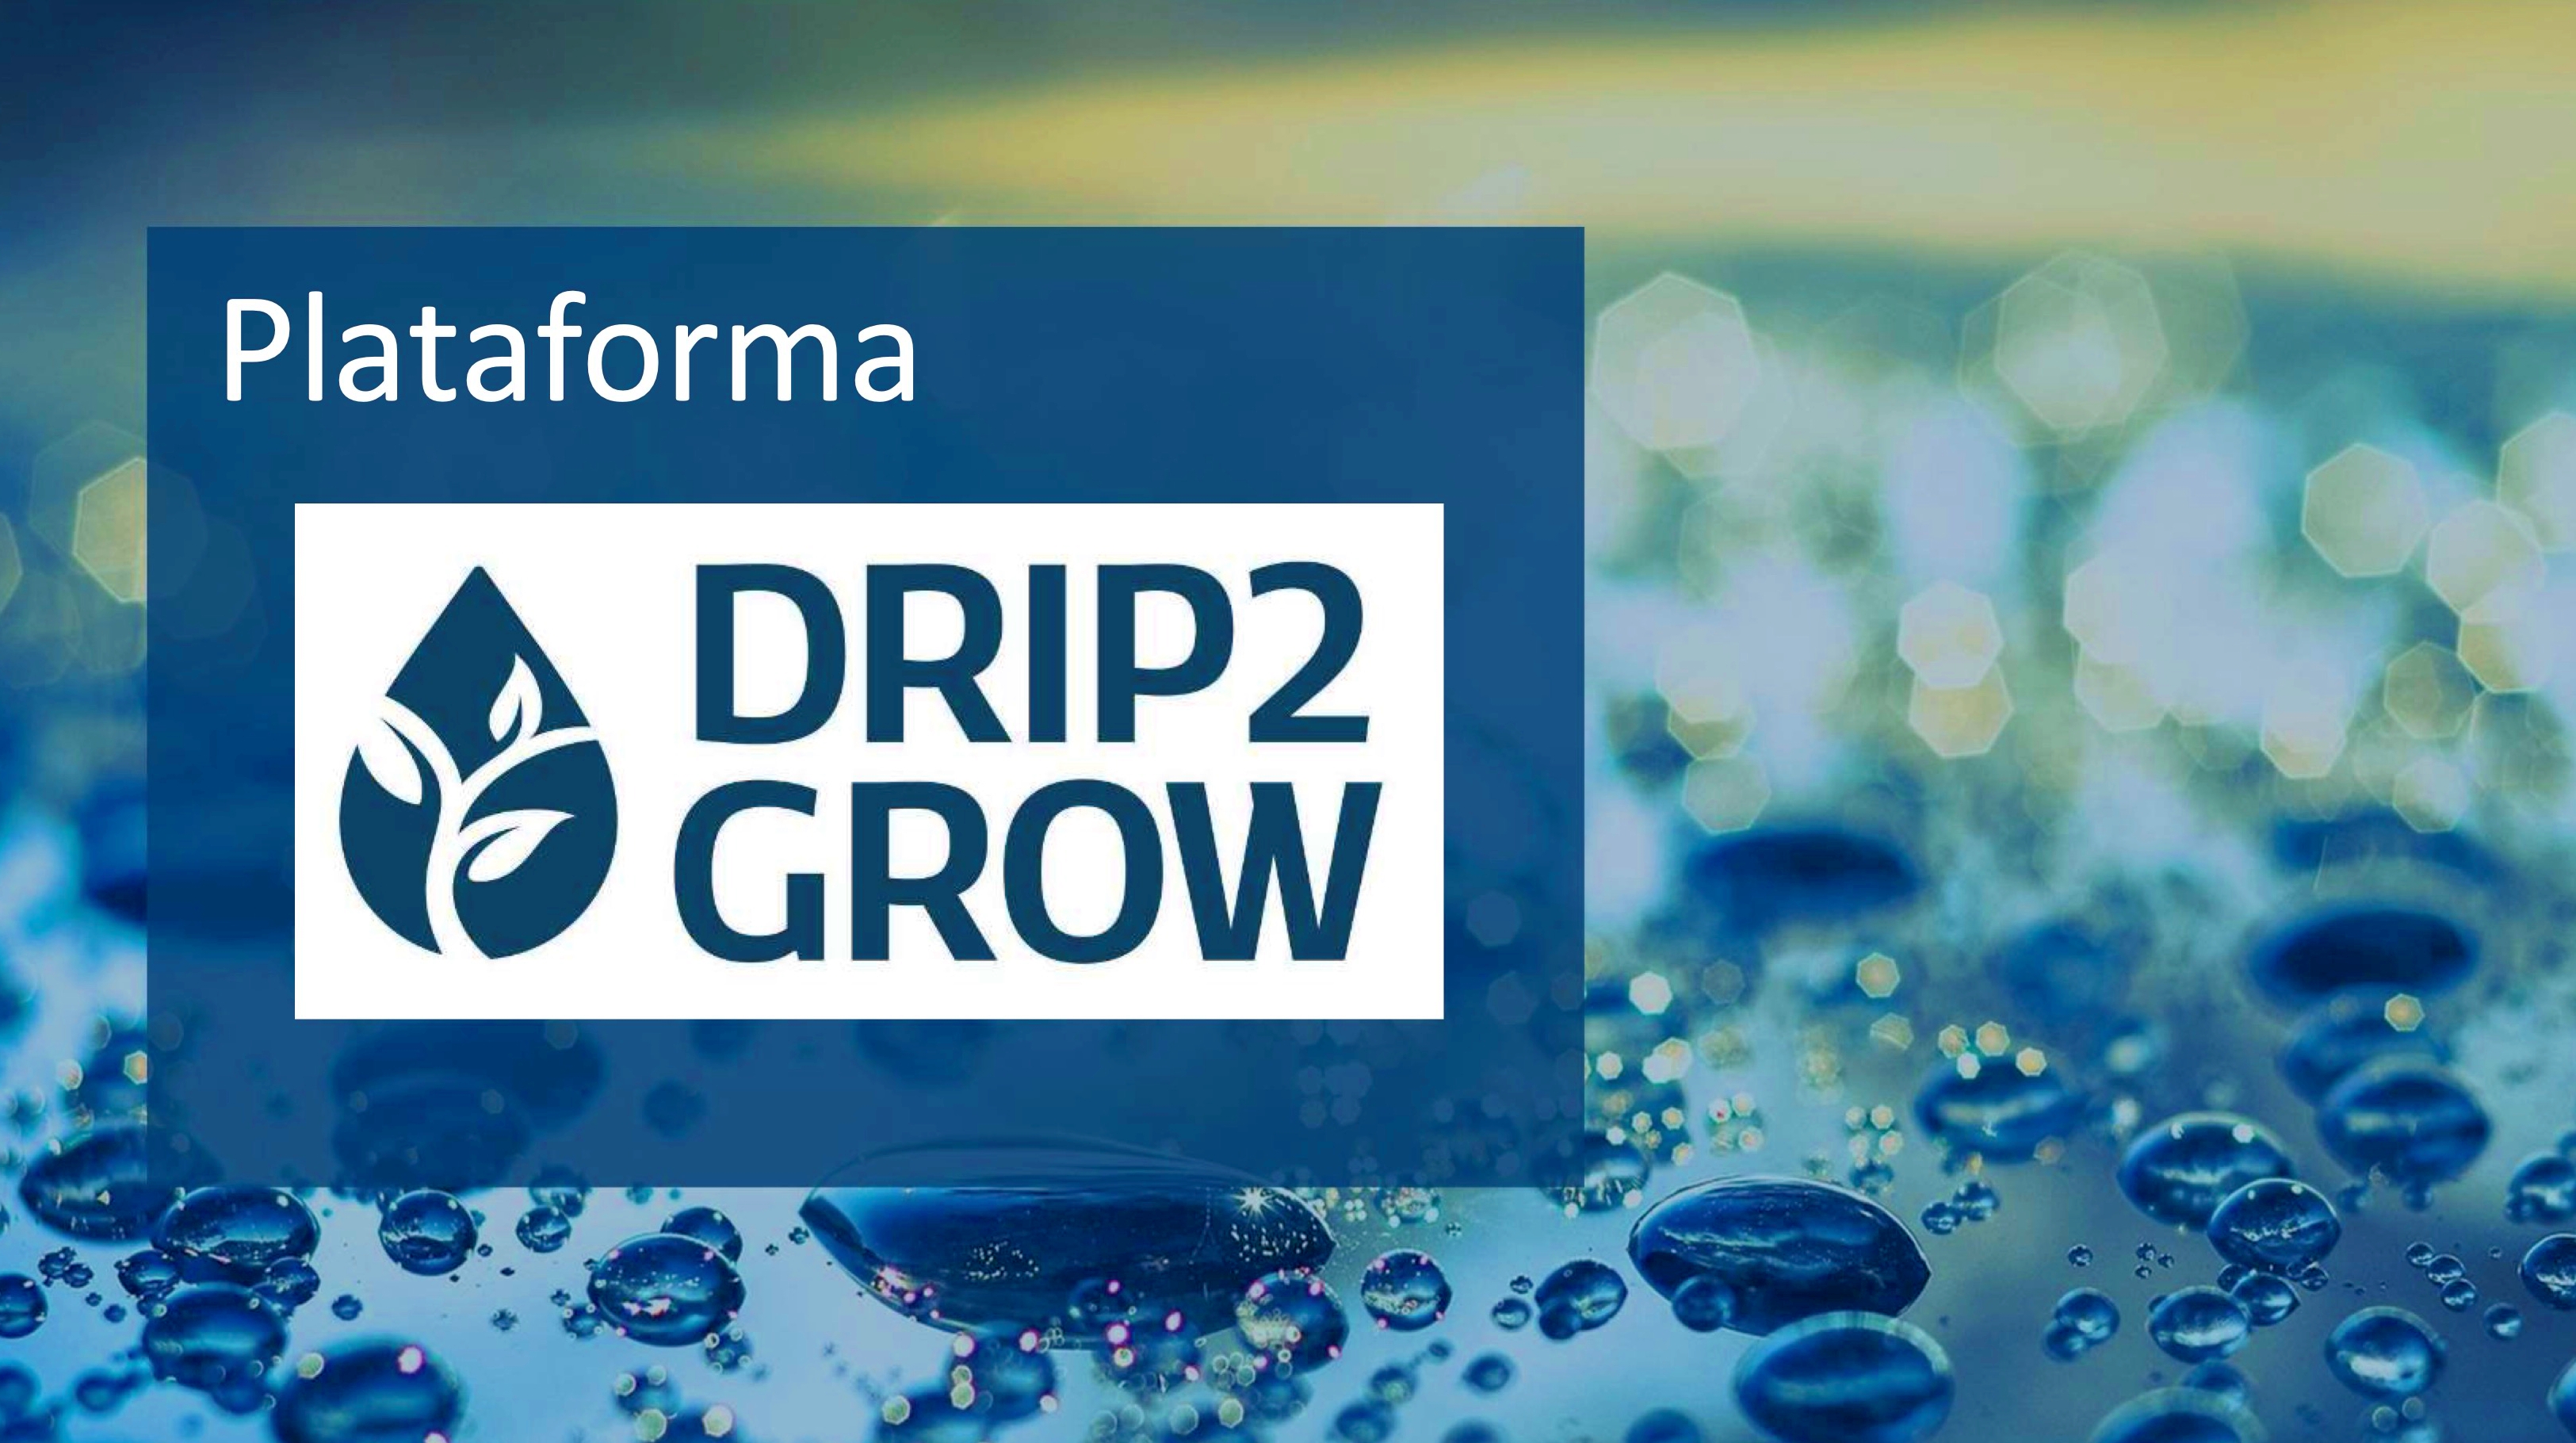 DRIP2GROW permite ahorros de agua de hasta el 30% en cultivos hortcolas